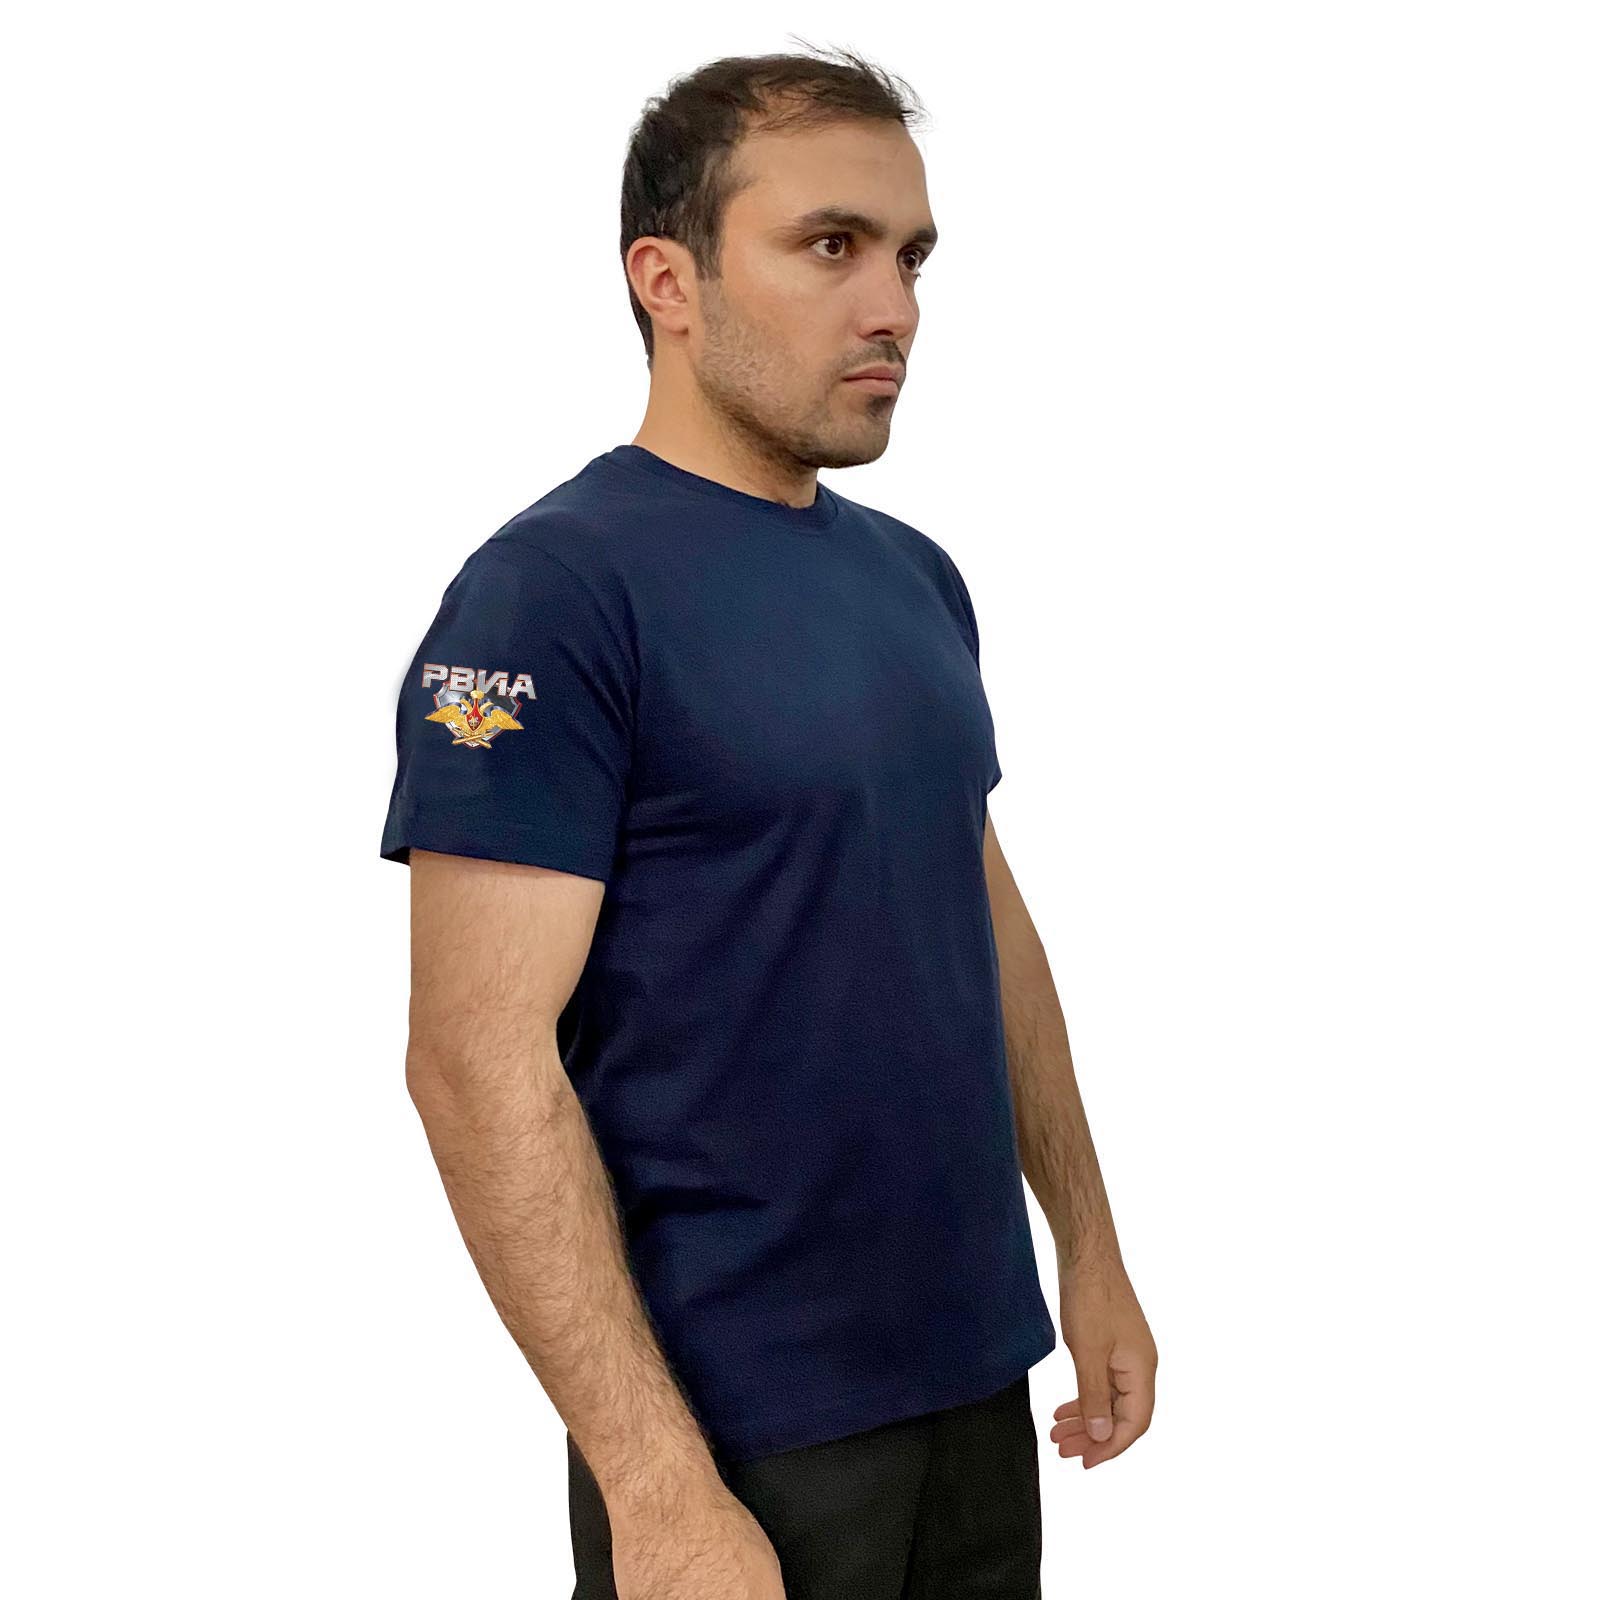 Купить удобную темно-синюю футболку с термотрансфером РВиА онлайн